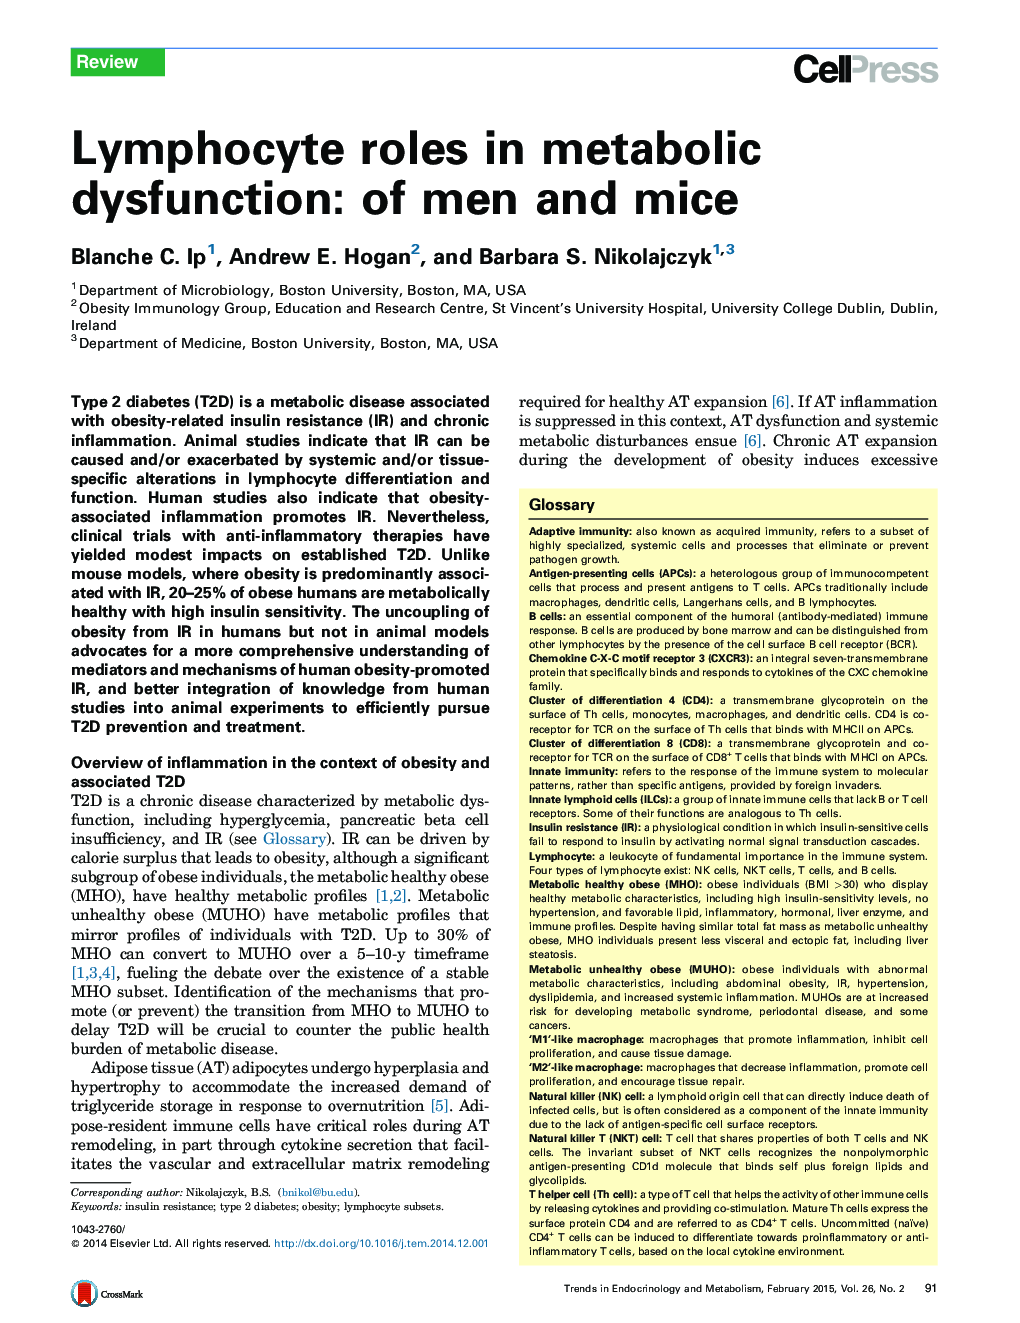 نقش لنفوسیت در اختلال متابولیک: مردان و موش ها 